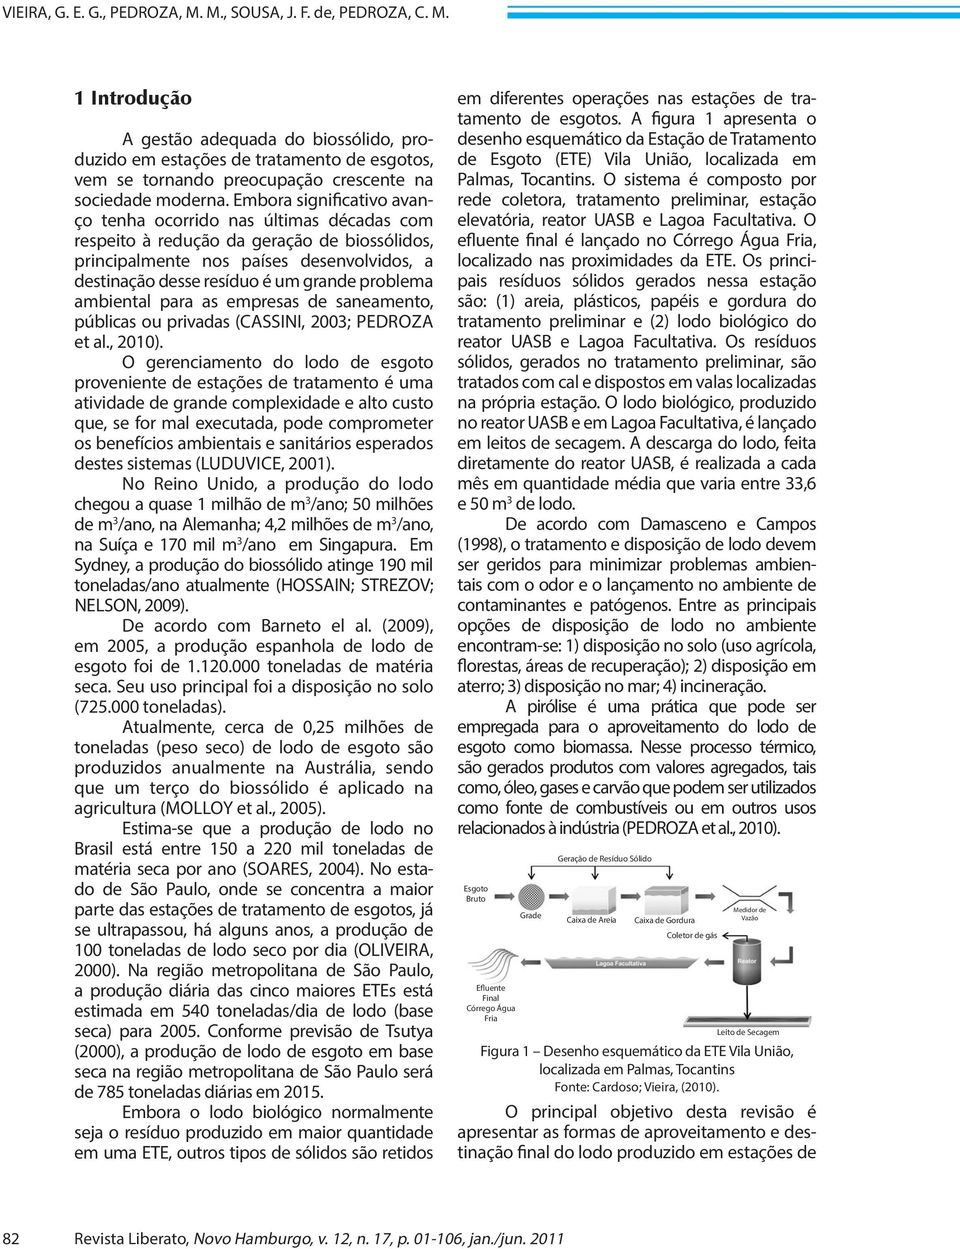 problema ambiental para as empresas de saneamento, públicas ou privadas (CASSINI, 2003; PEDROZA et al., 2010).